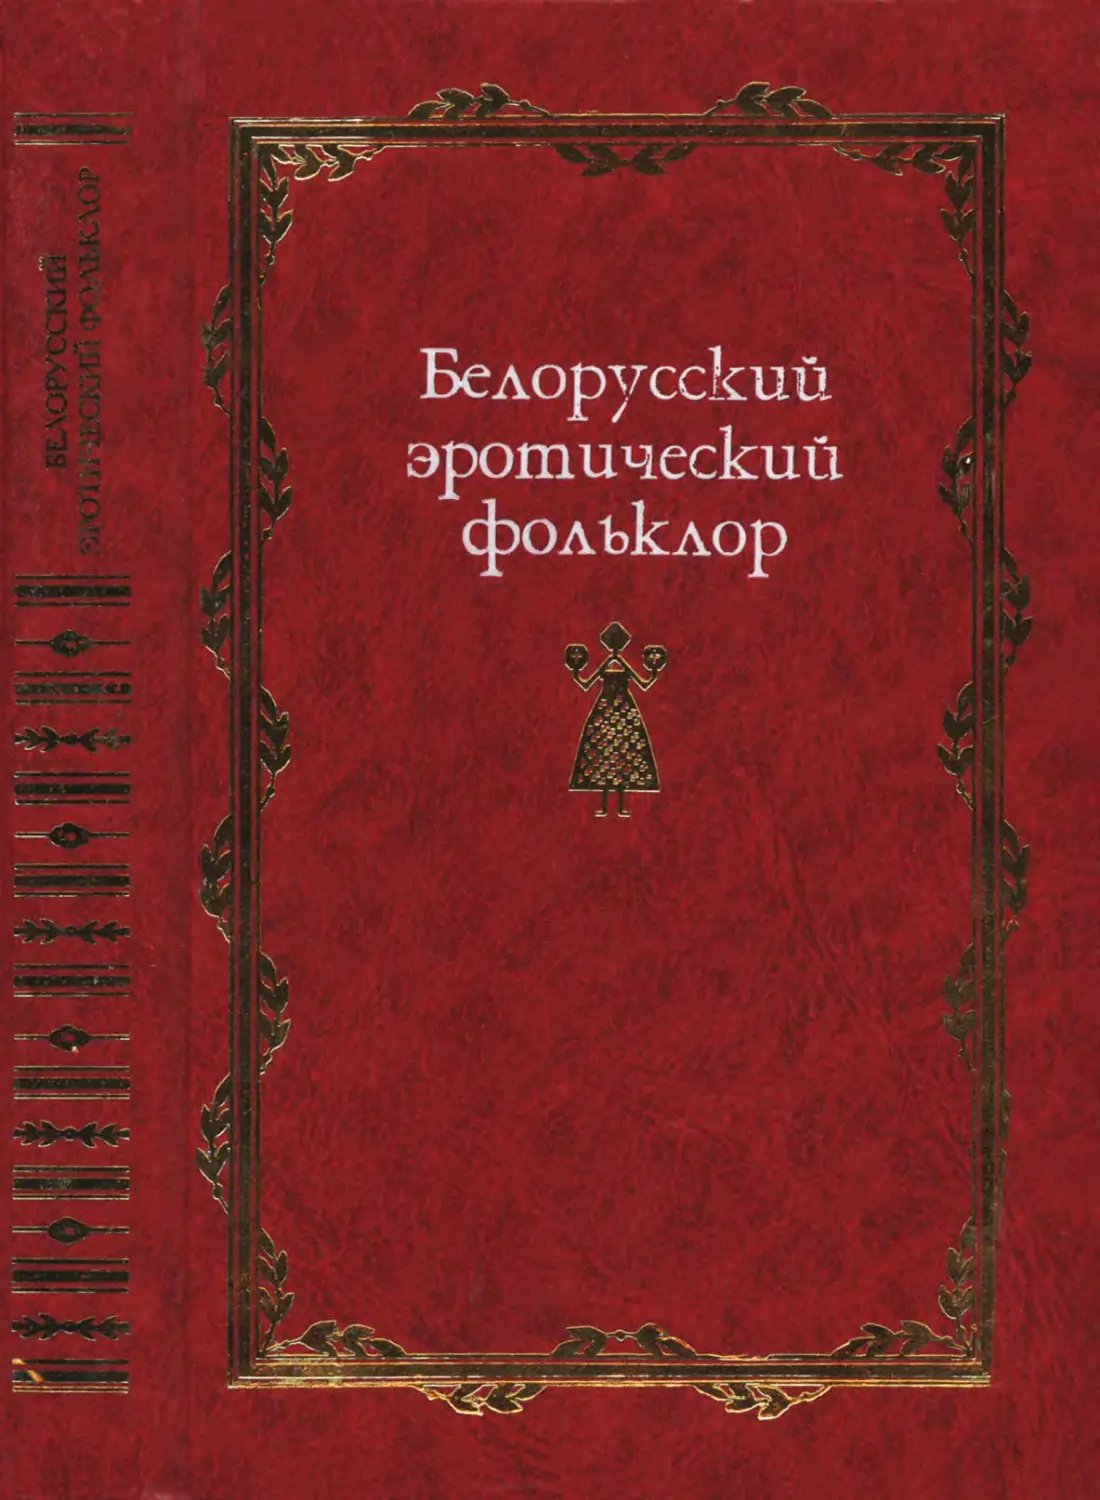 Белорусский эротический фольклор - 2006